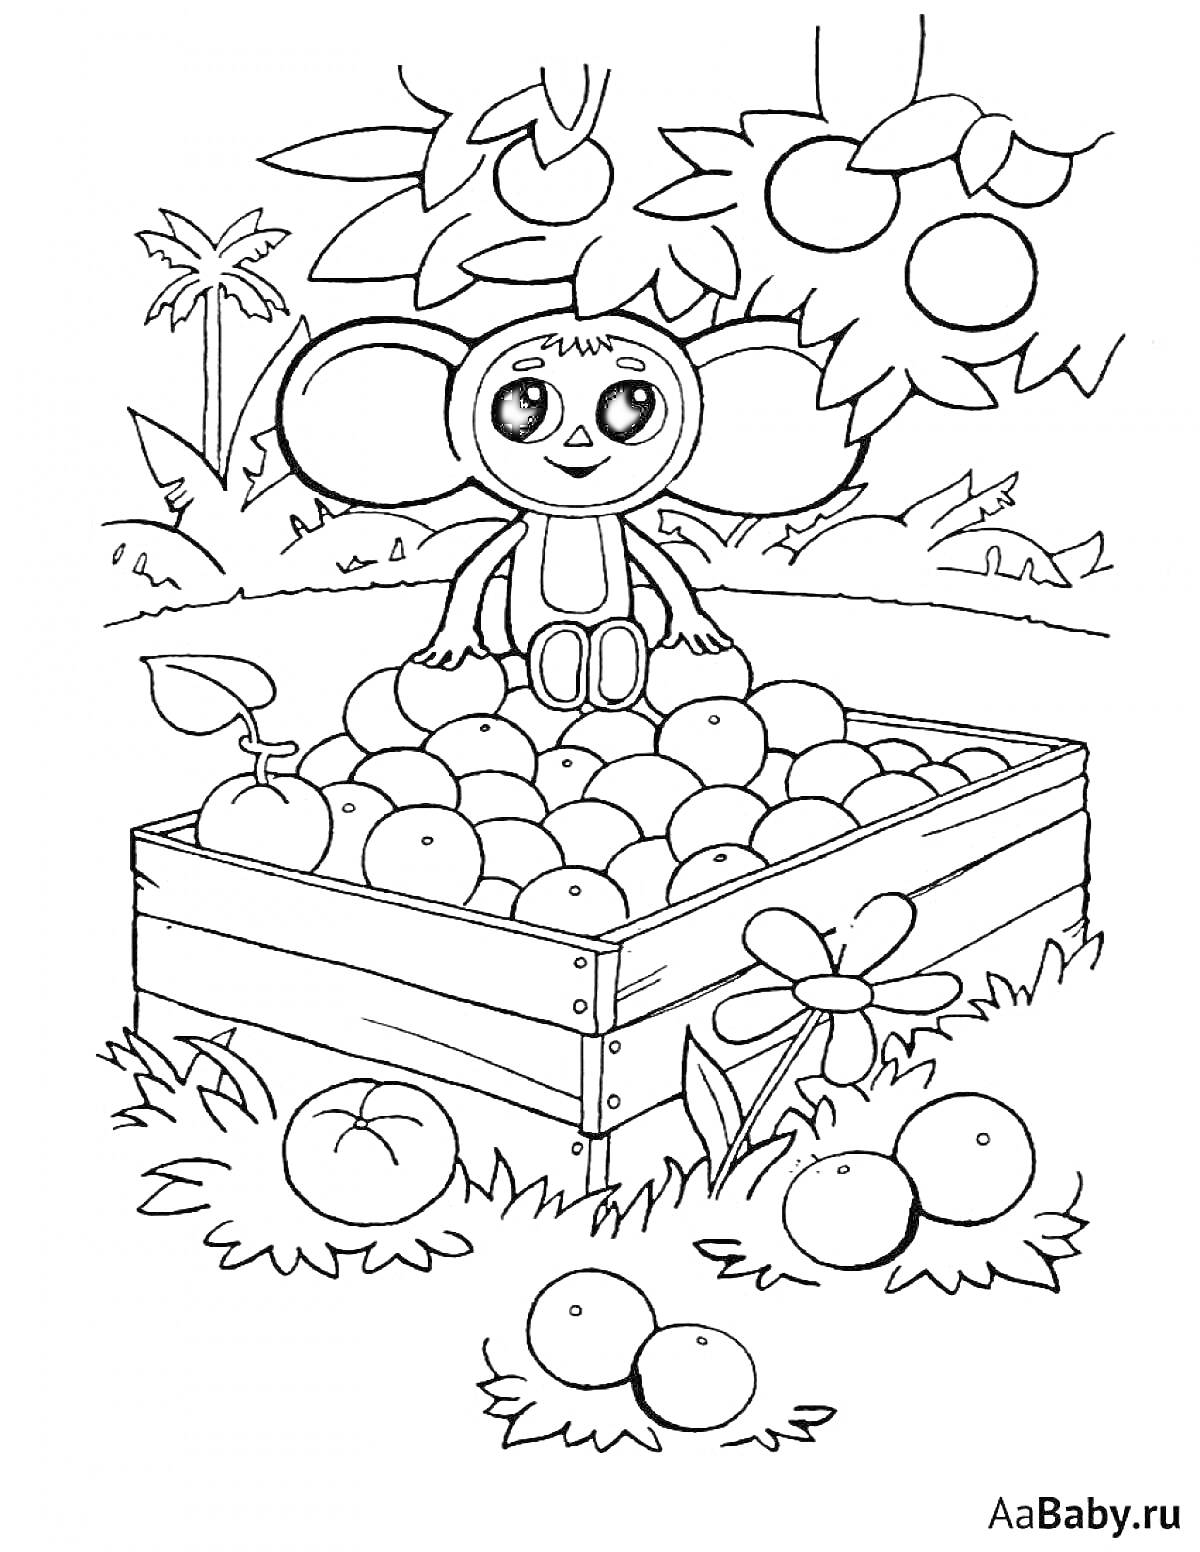 Раскраска Чебурашка в ящике с апельсинами под деревом